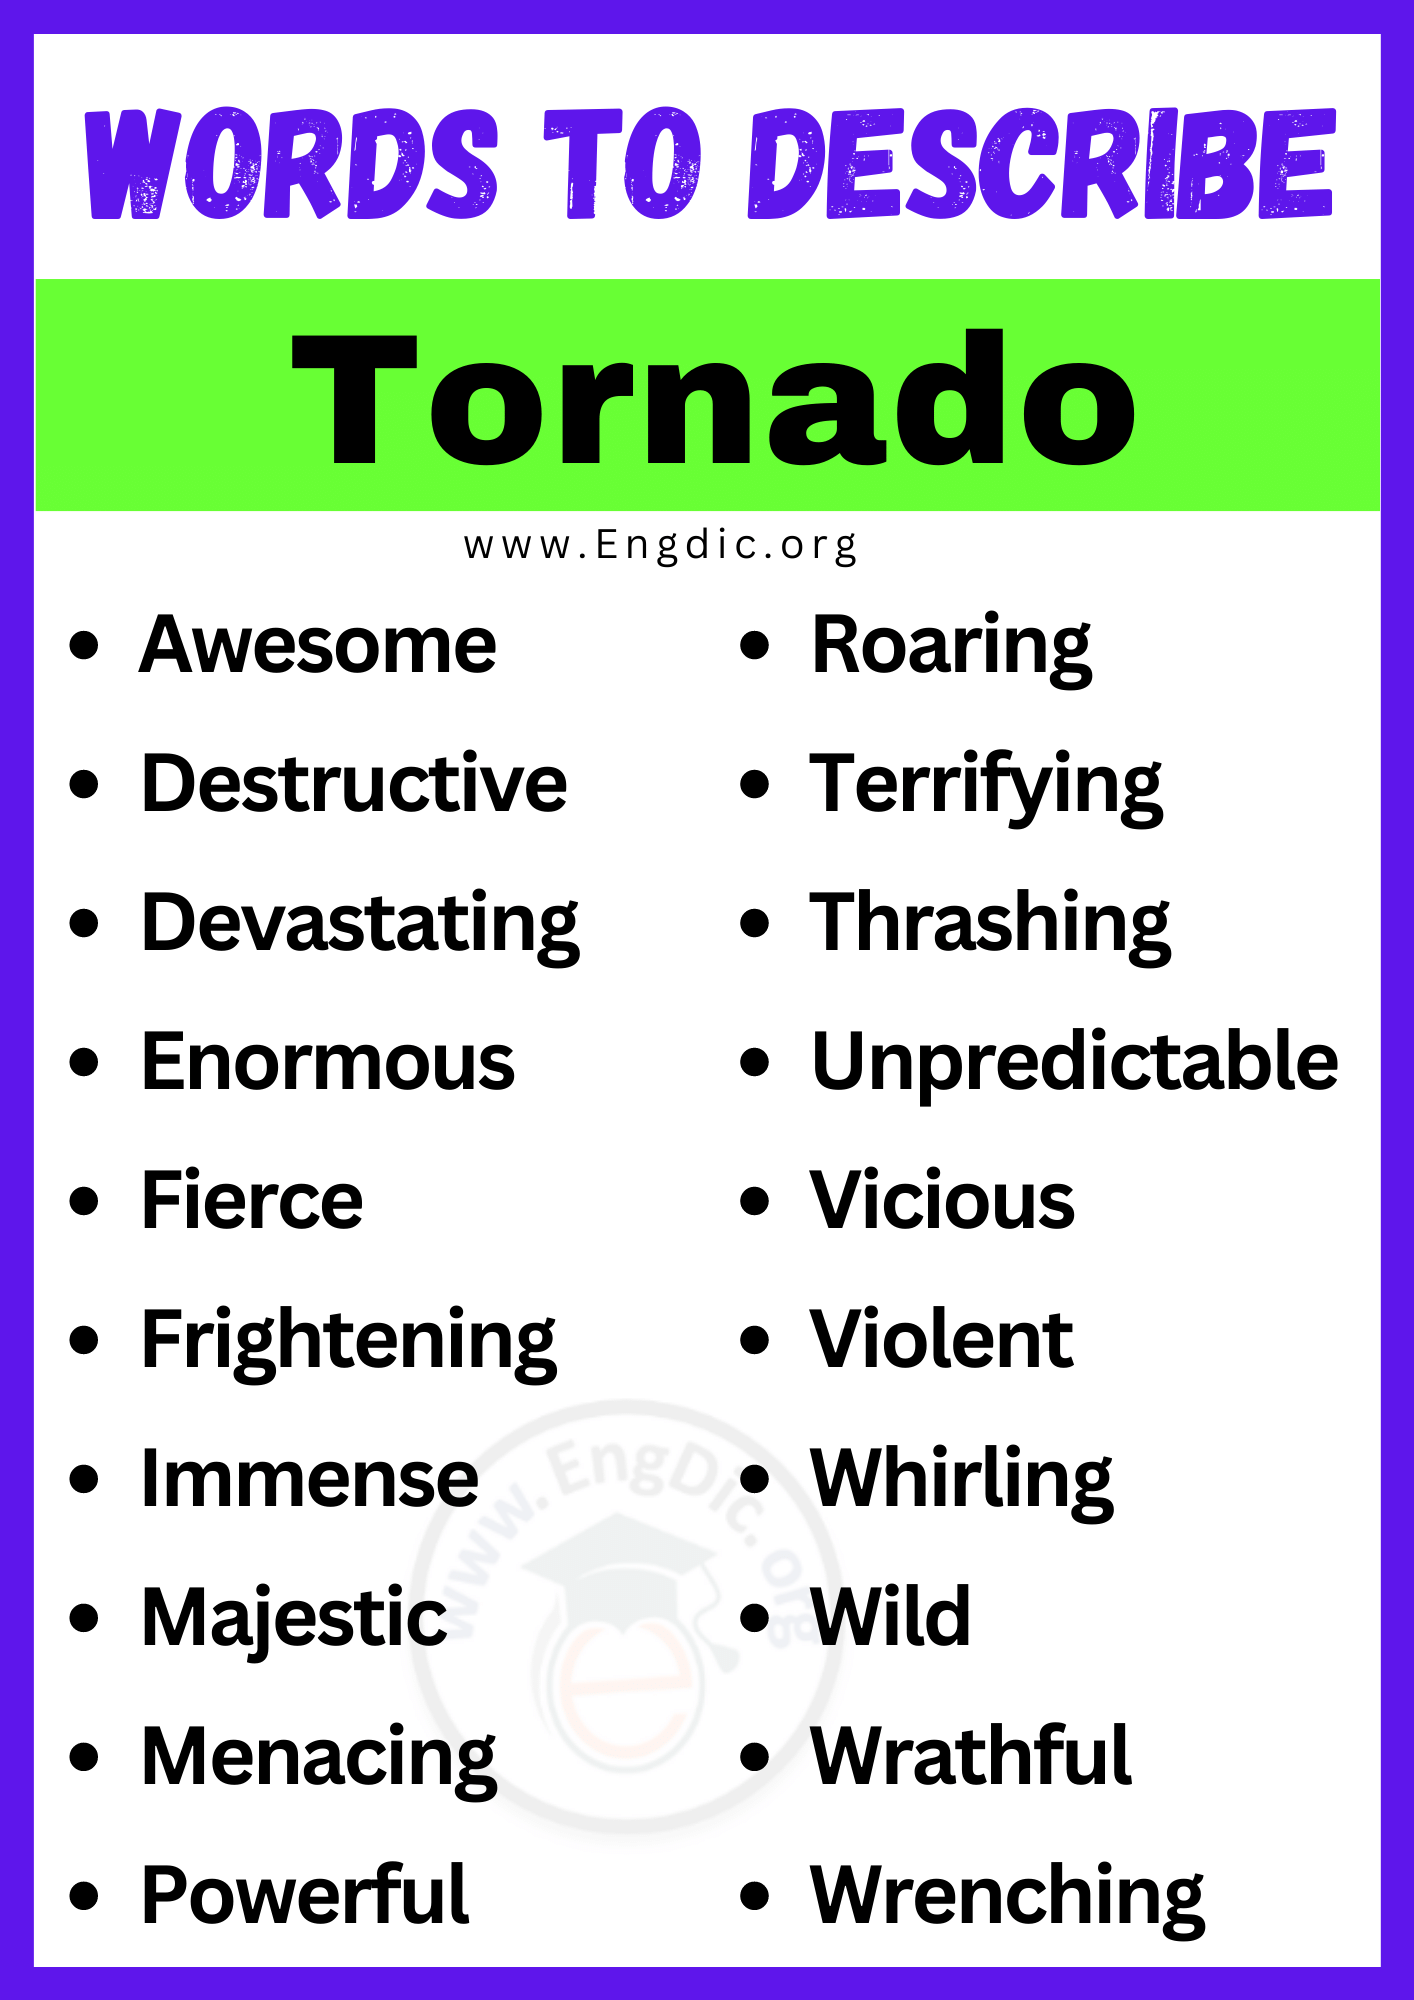 Words to Describe Tornado